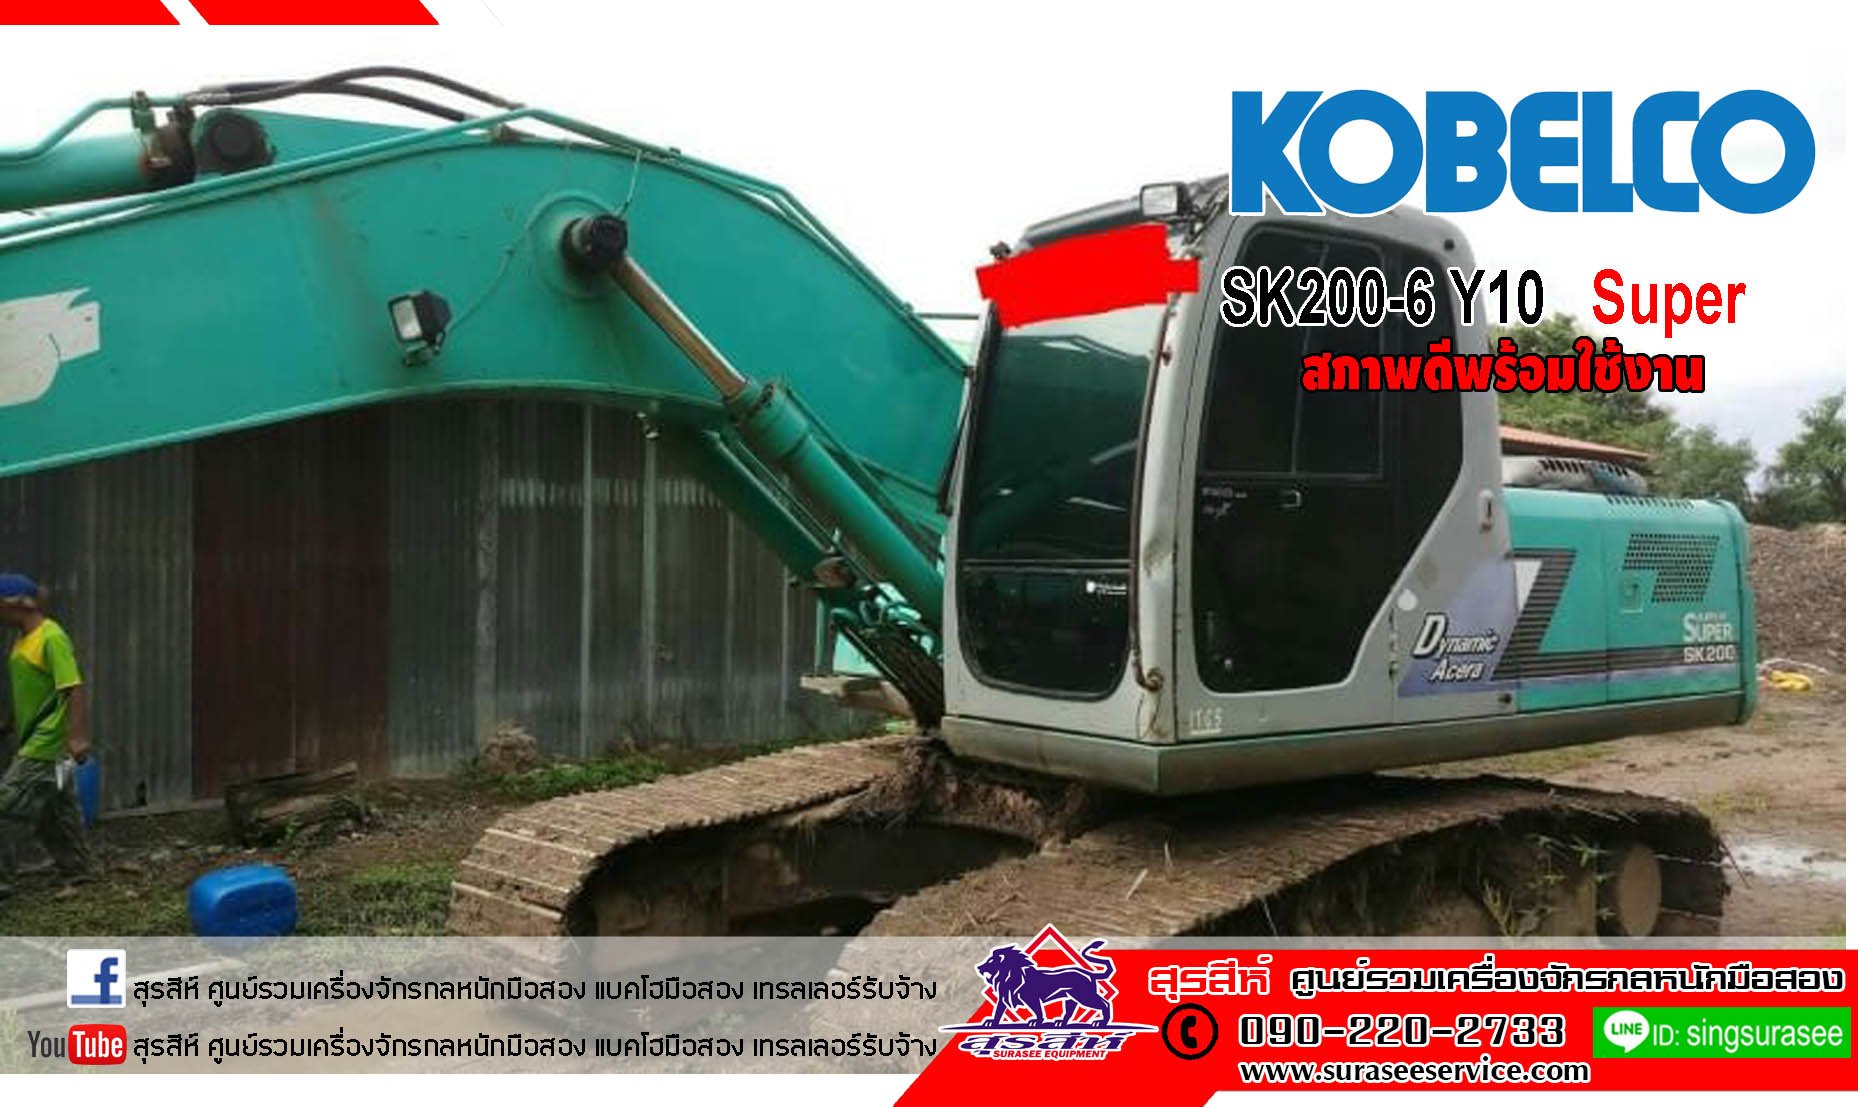 ขายรถขุด KOBELCO SK200-6 YN10 Super สภาพดี